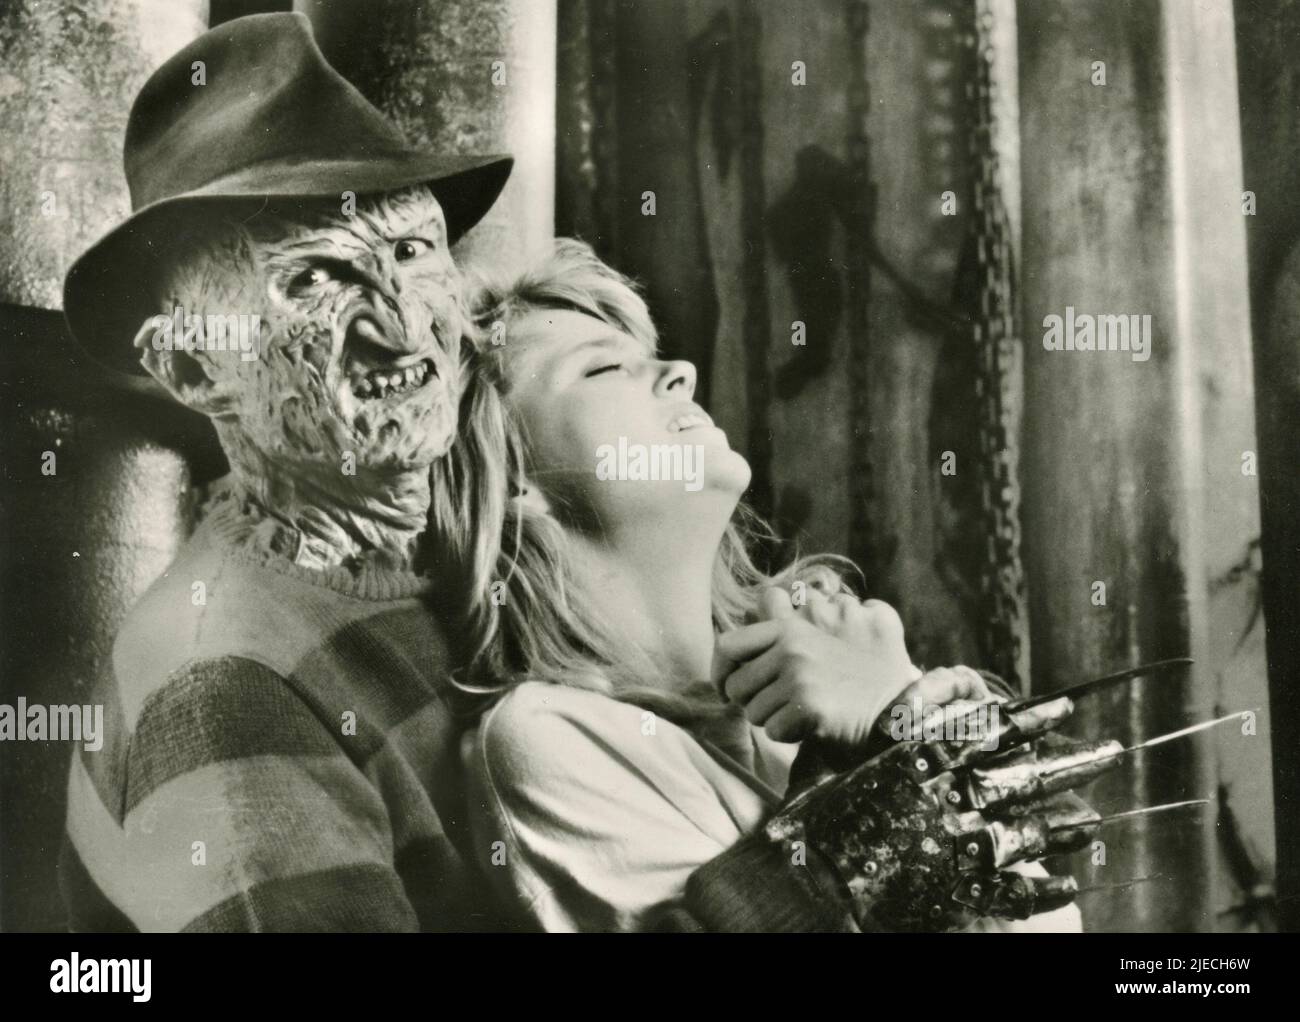 Der amerikanische Schauspieler Robert Englund und die Schauspielerin Mimi Craven im Film Nightmare on Elm Street, USA 1984 Stockfoto